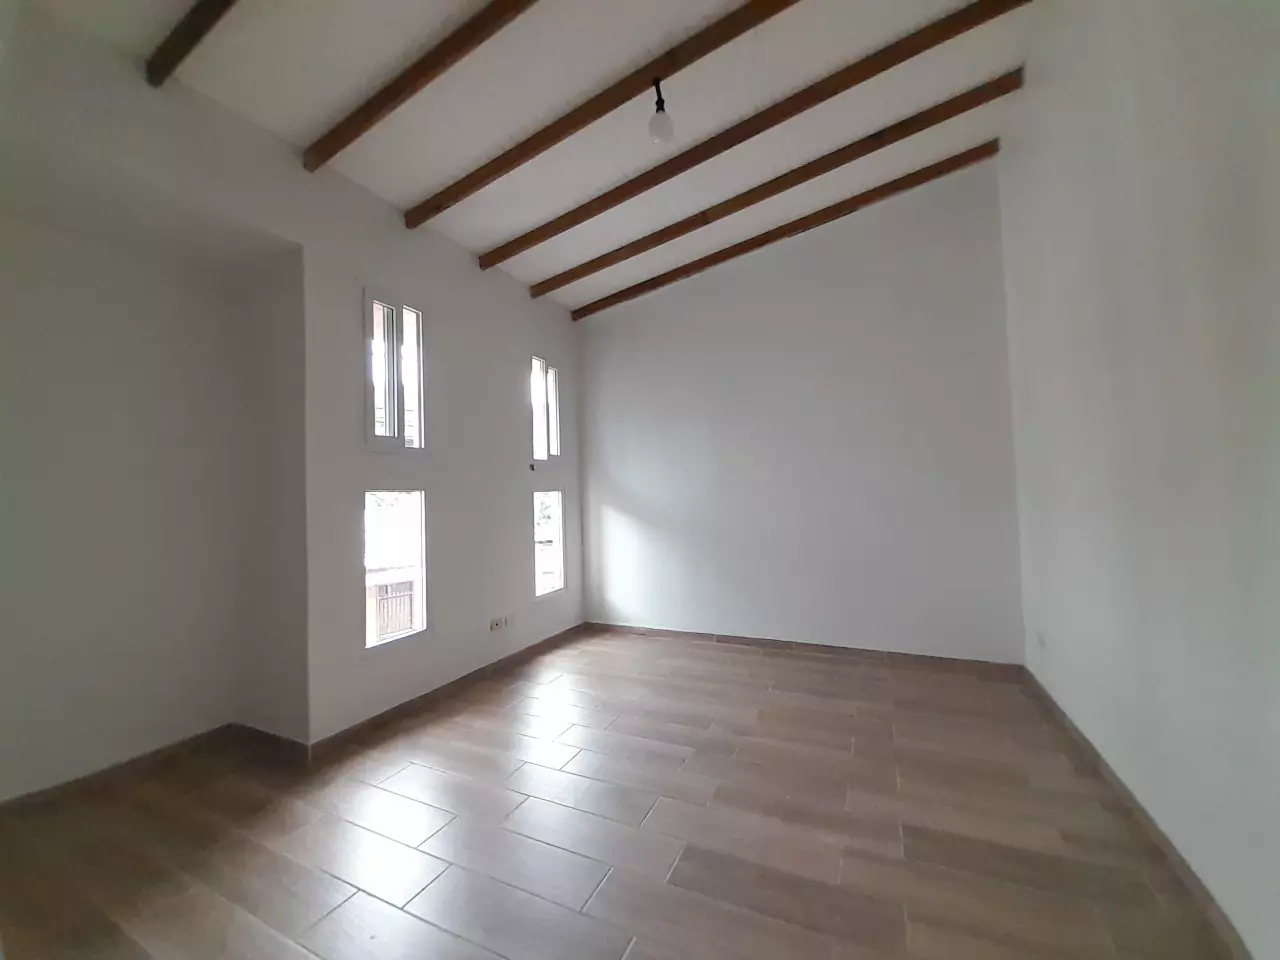 Habitación con paredes de color blanco con suelo de porcelanato estilo de madera, con ventanas corredizas de pvc.